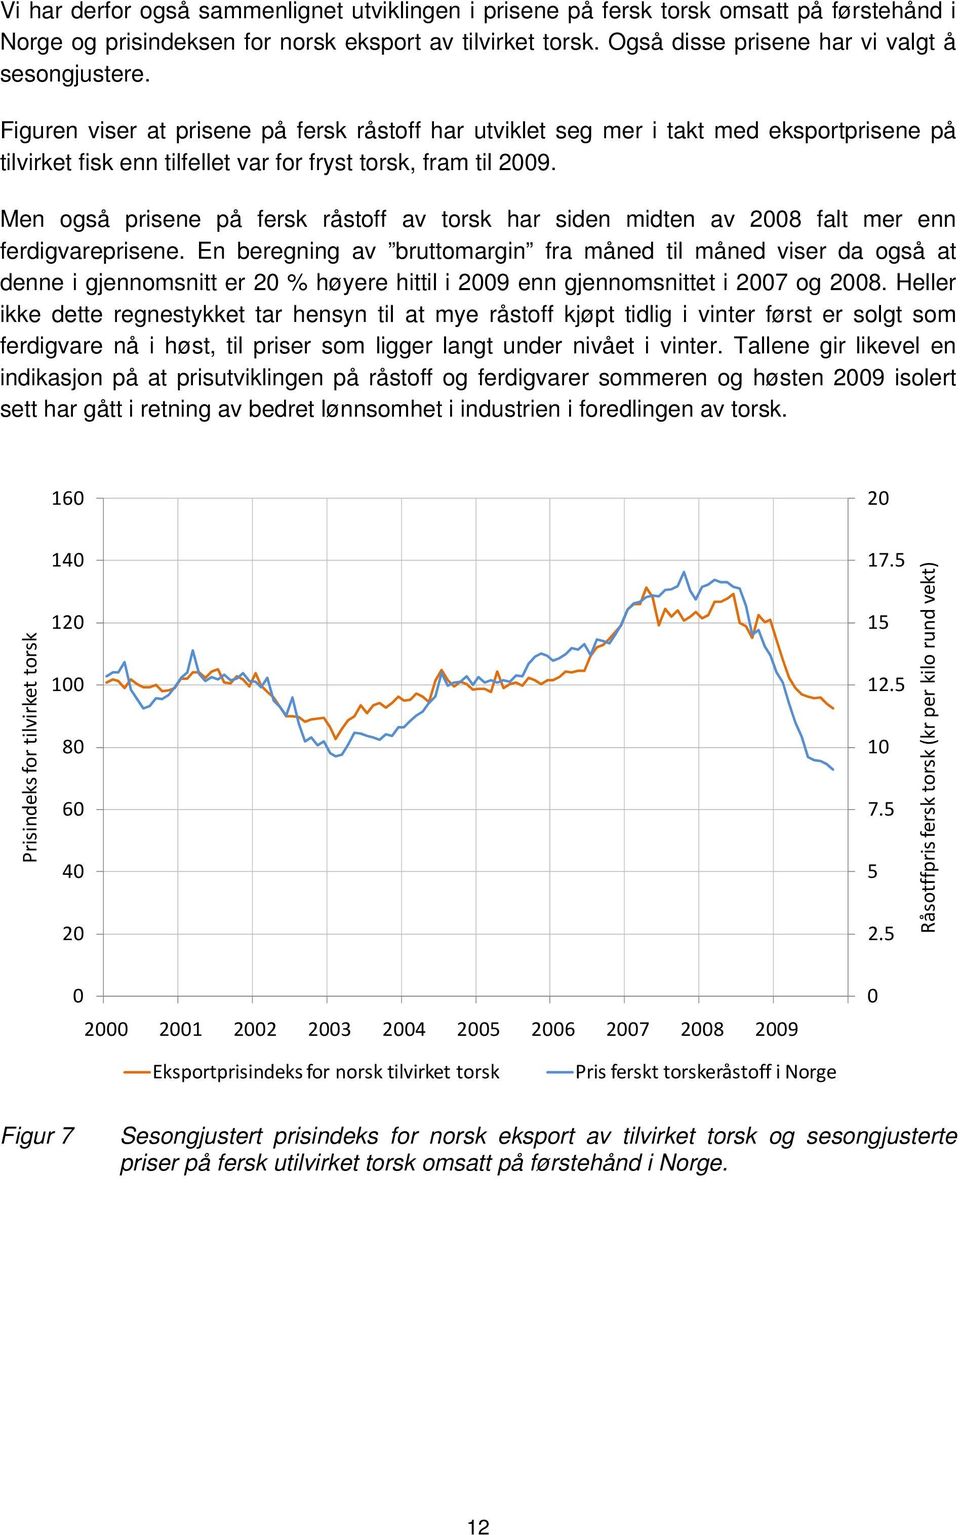 Men også prisene på fersk råstoff av torsk har siden midten av 2008 falt mer enn ferdigvareprisene.